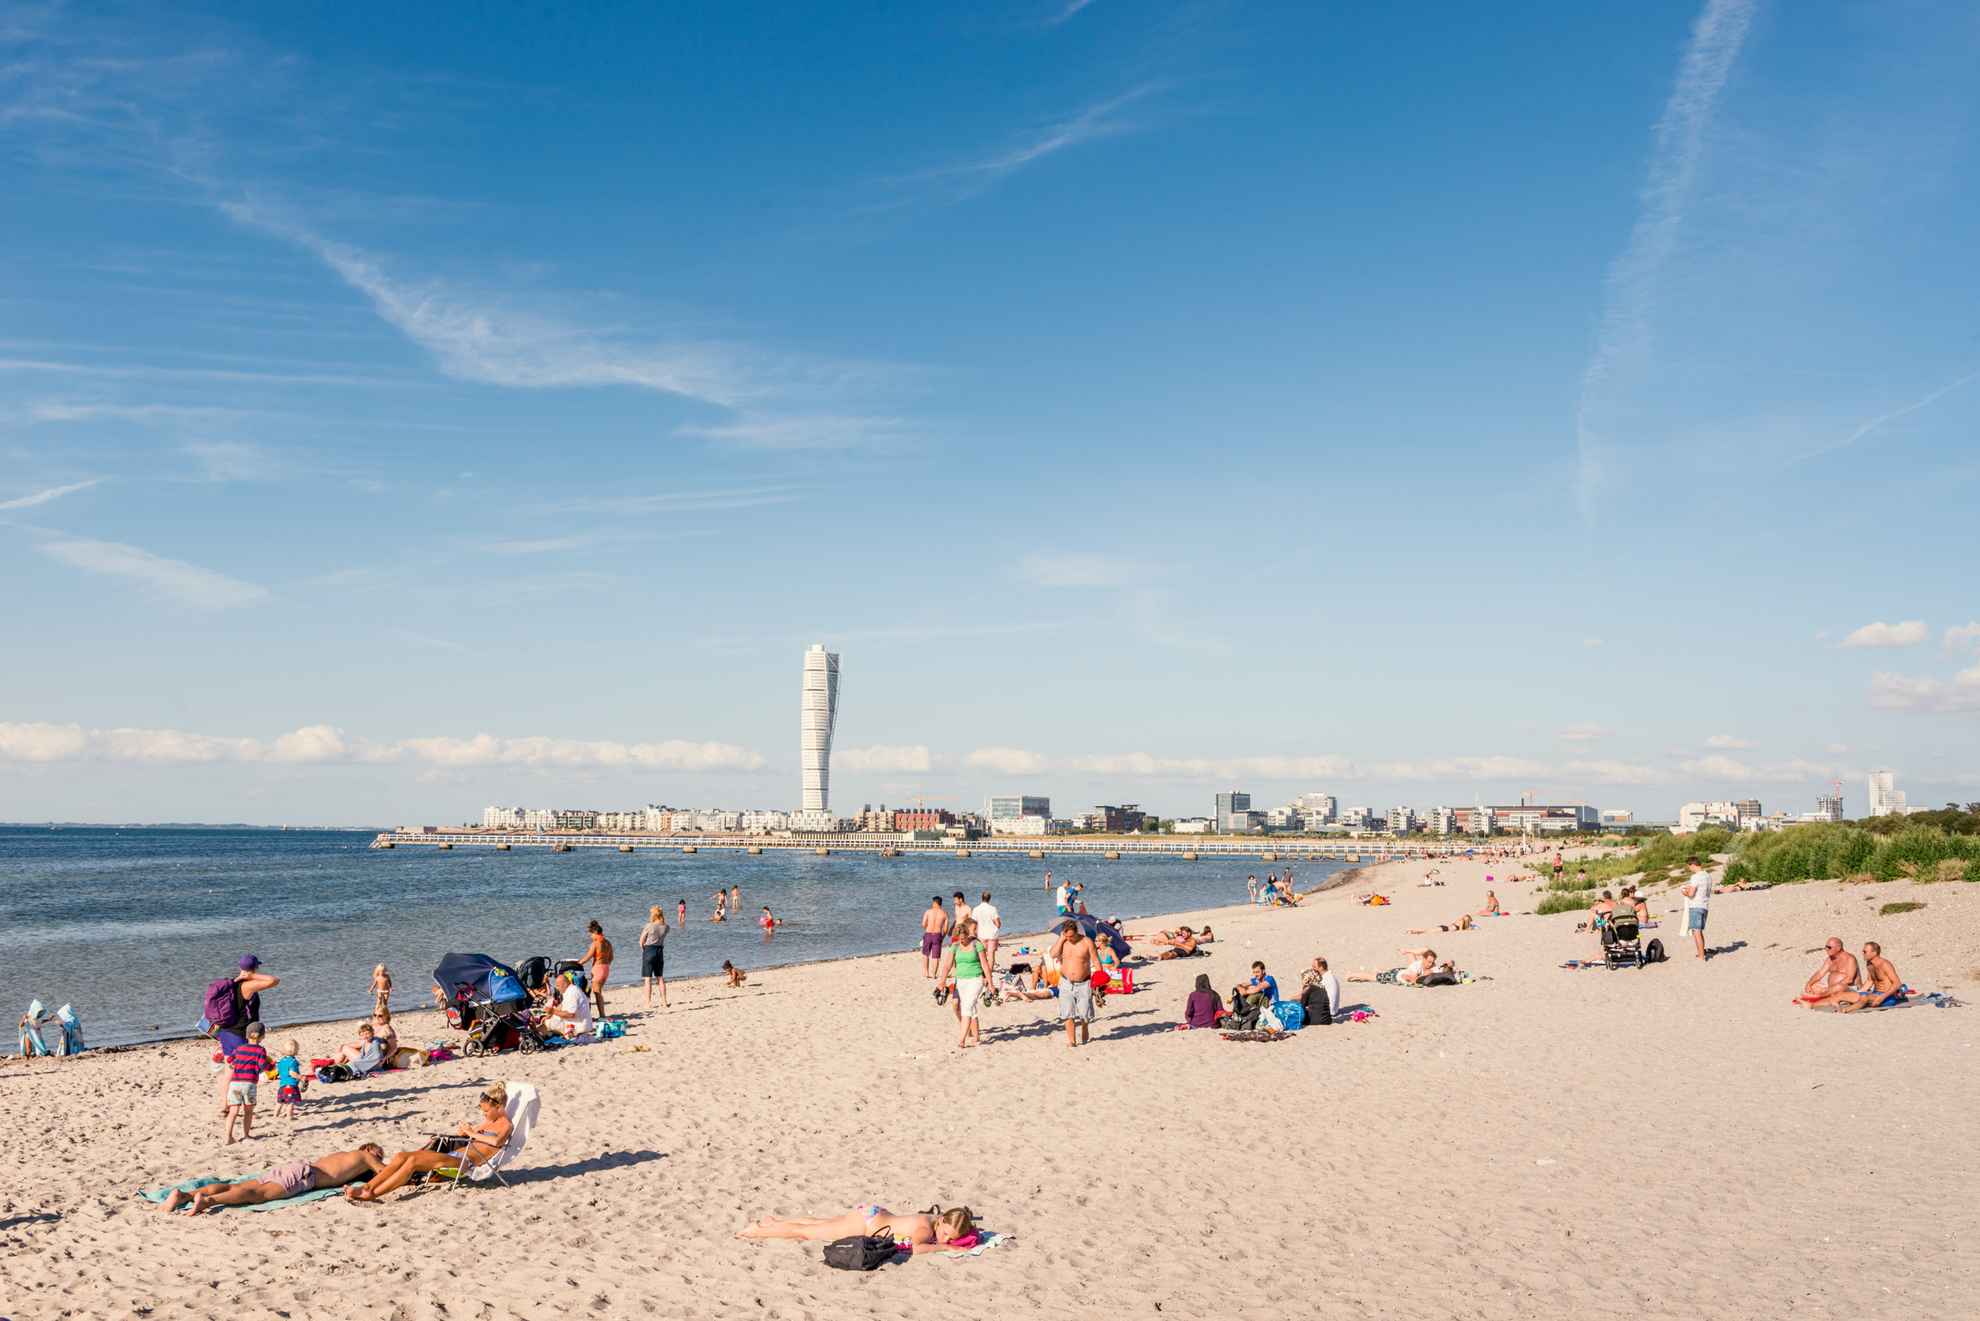 Des gens s'amusent sur une plage de Malmö. À l'horizon, on peut apercevoir le bâtiment "Turning Torso".